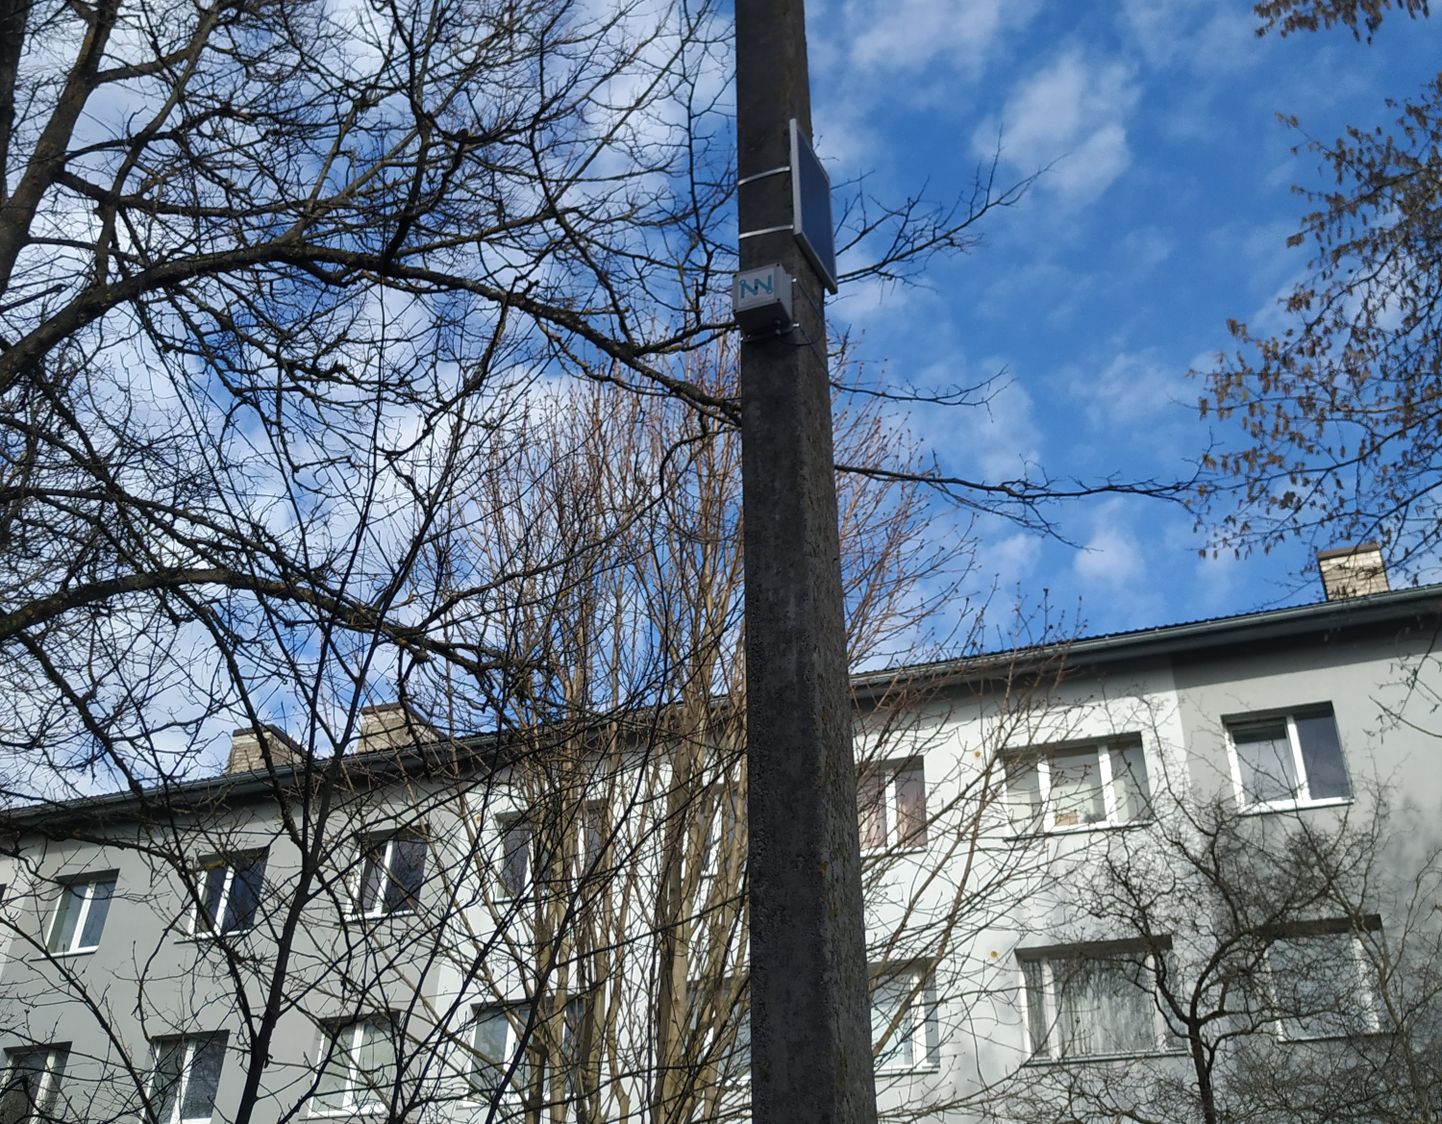 Читательницу Rus.Postimees заинтересовало устройство, находящееся на столбе уличного освещения.